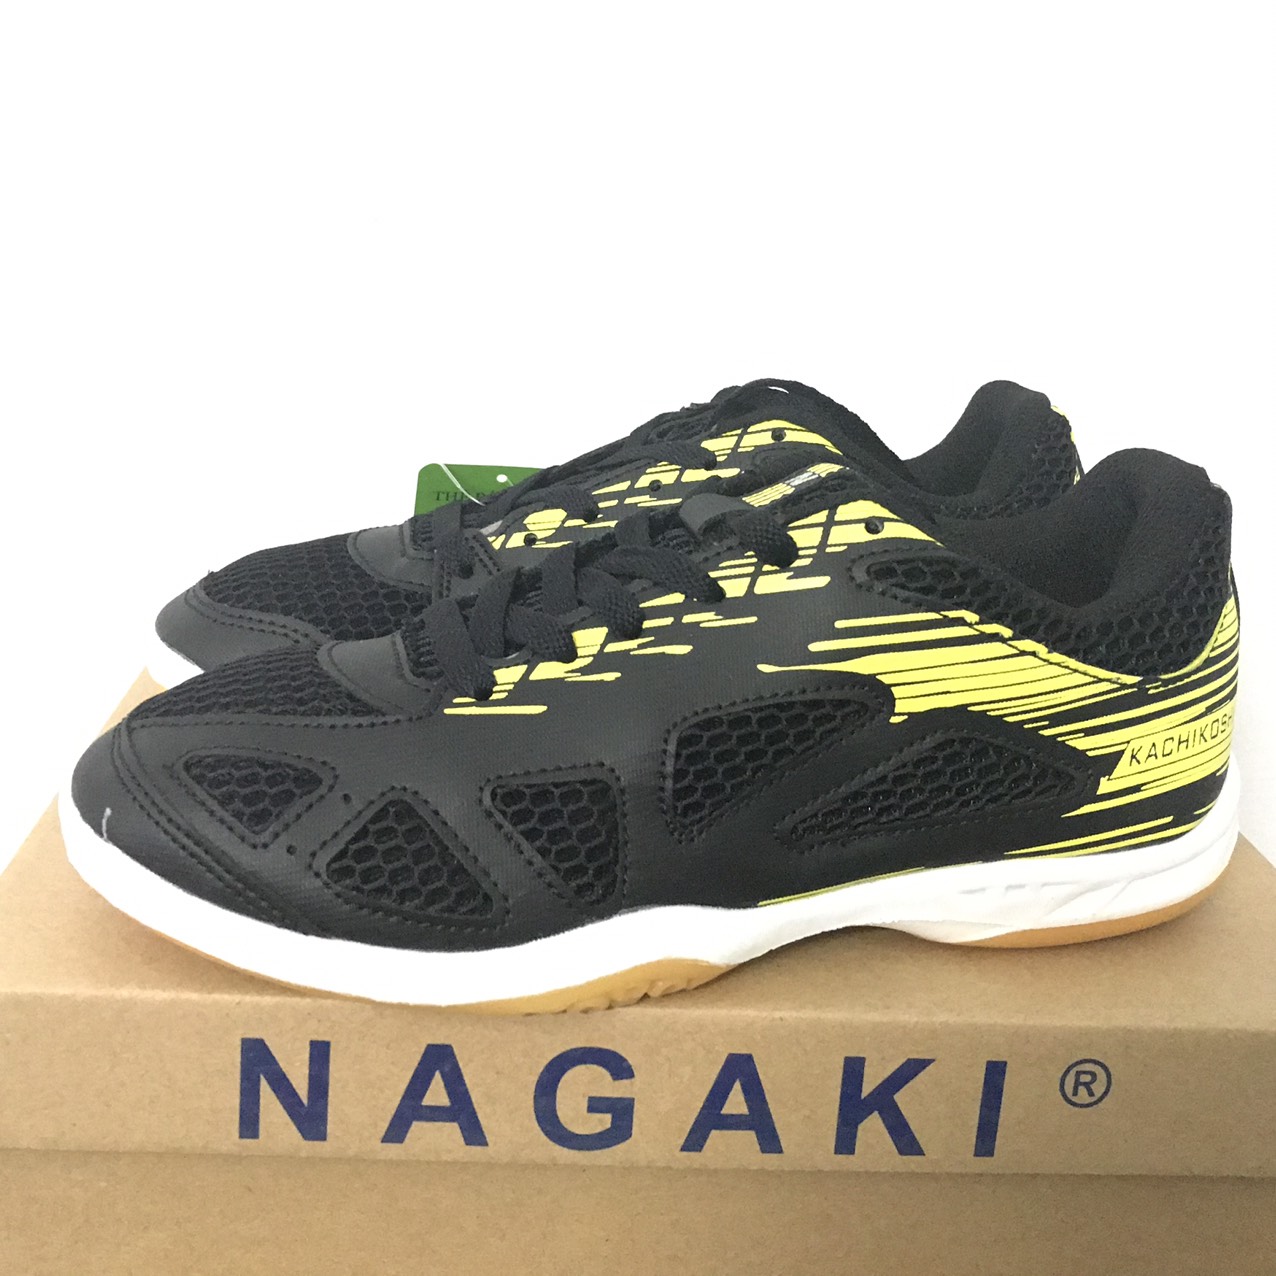 Giày cầu lông chuyên dụng Nagaki